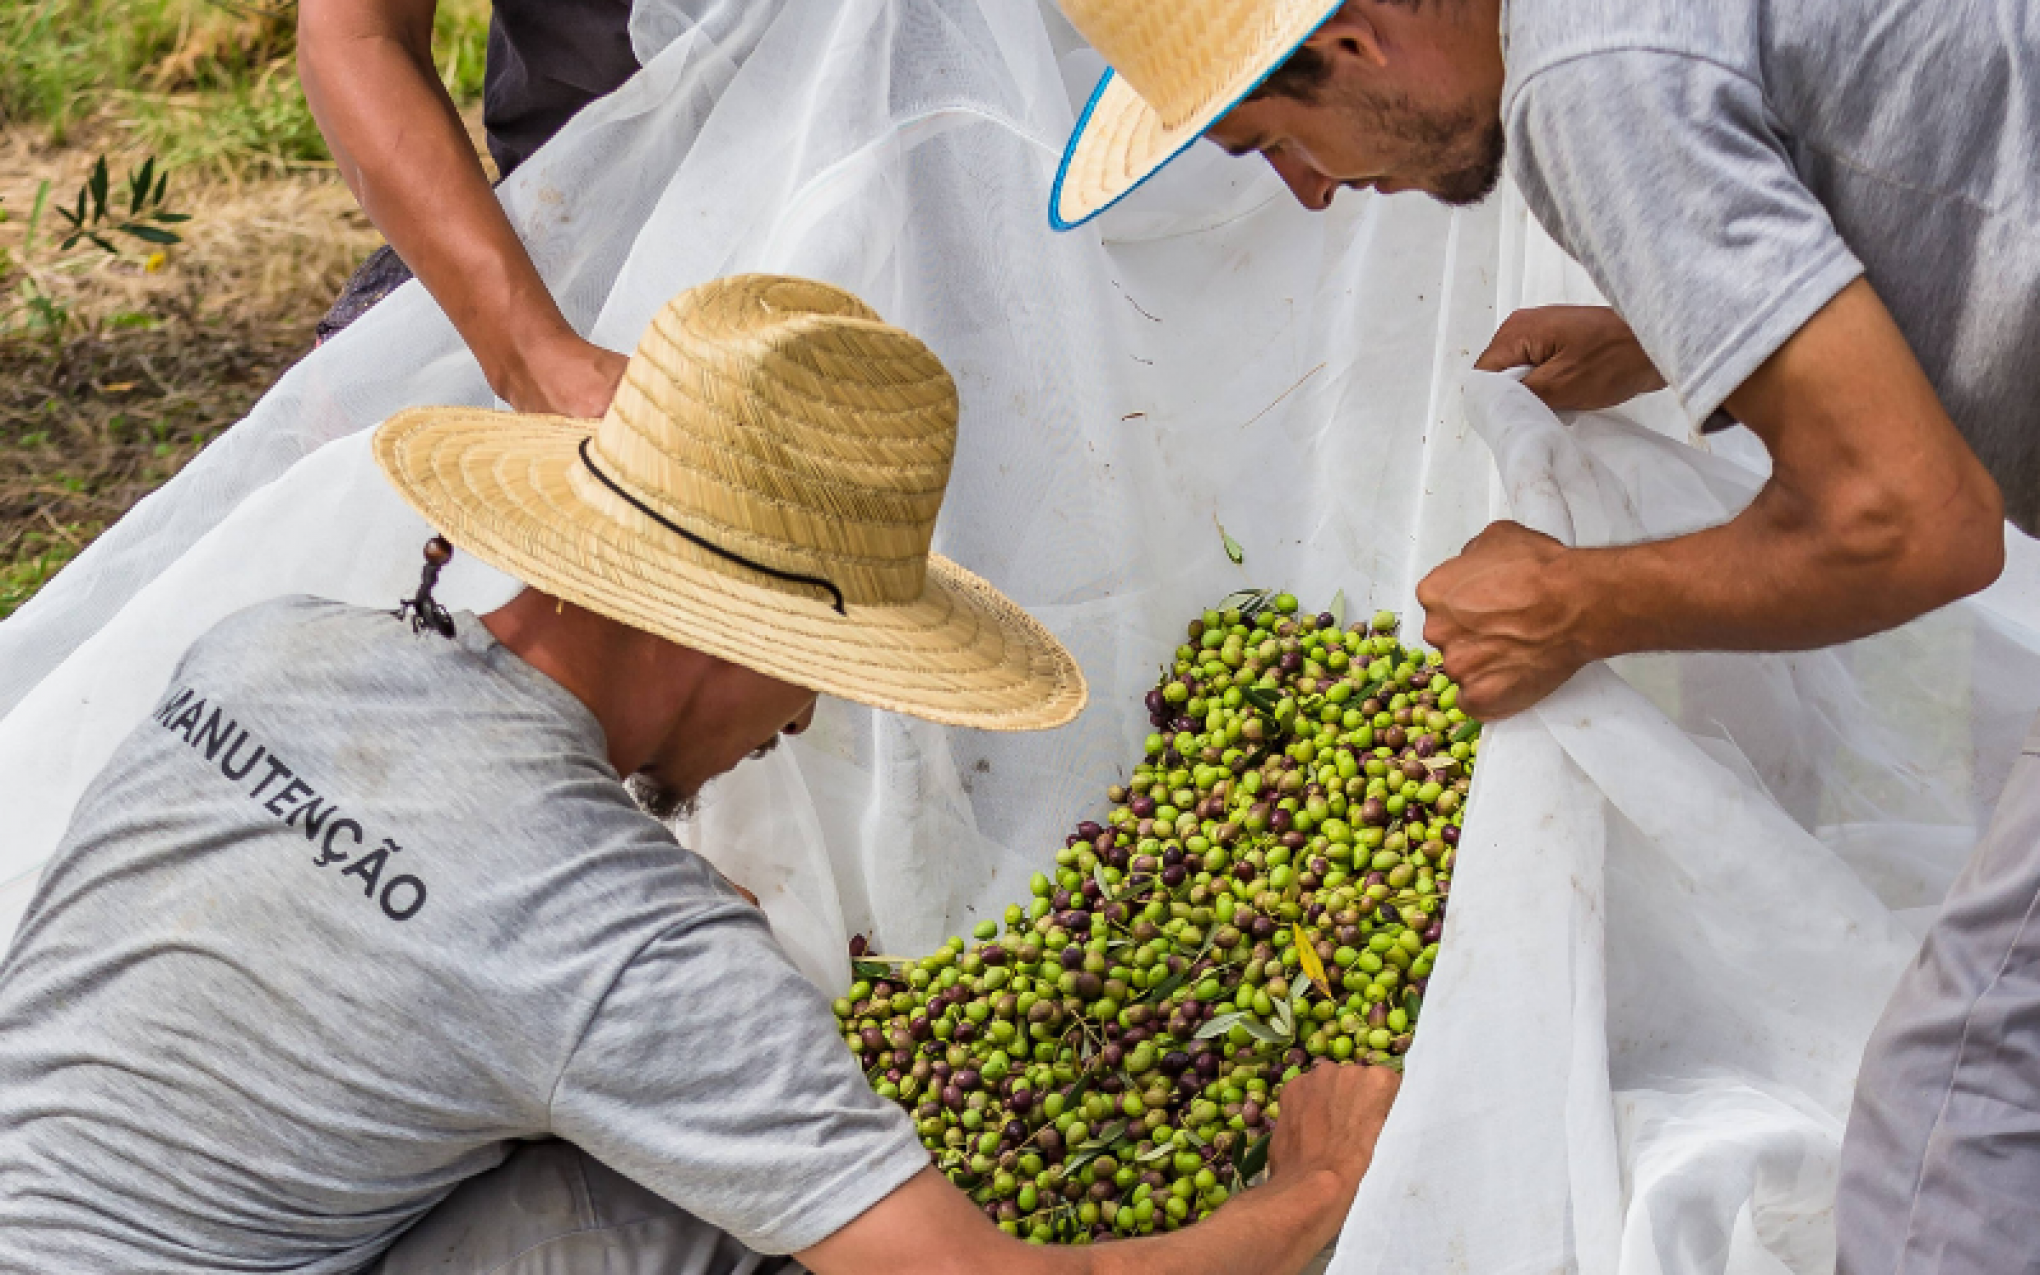 Com dez toneladas de azeitonas colhidas em Gramado, produtor apresenta edição especial de azeite